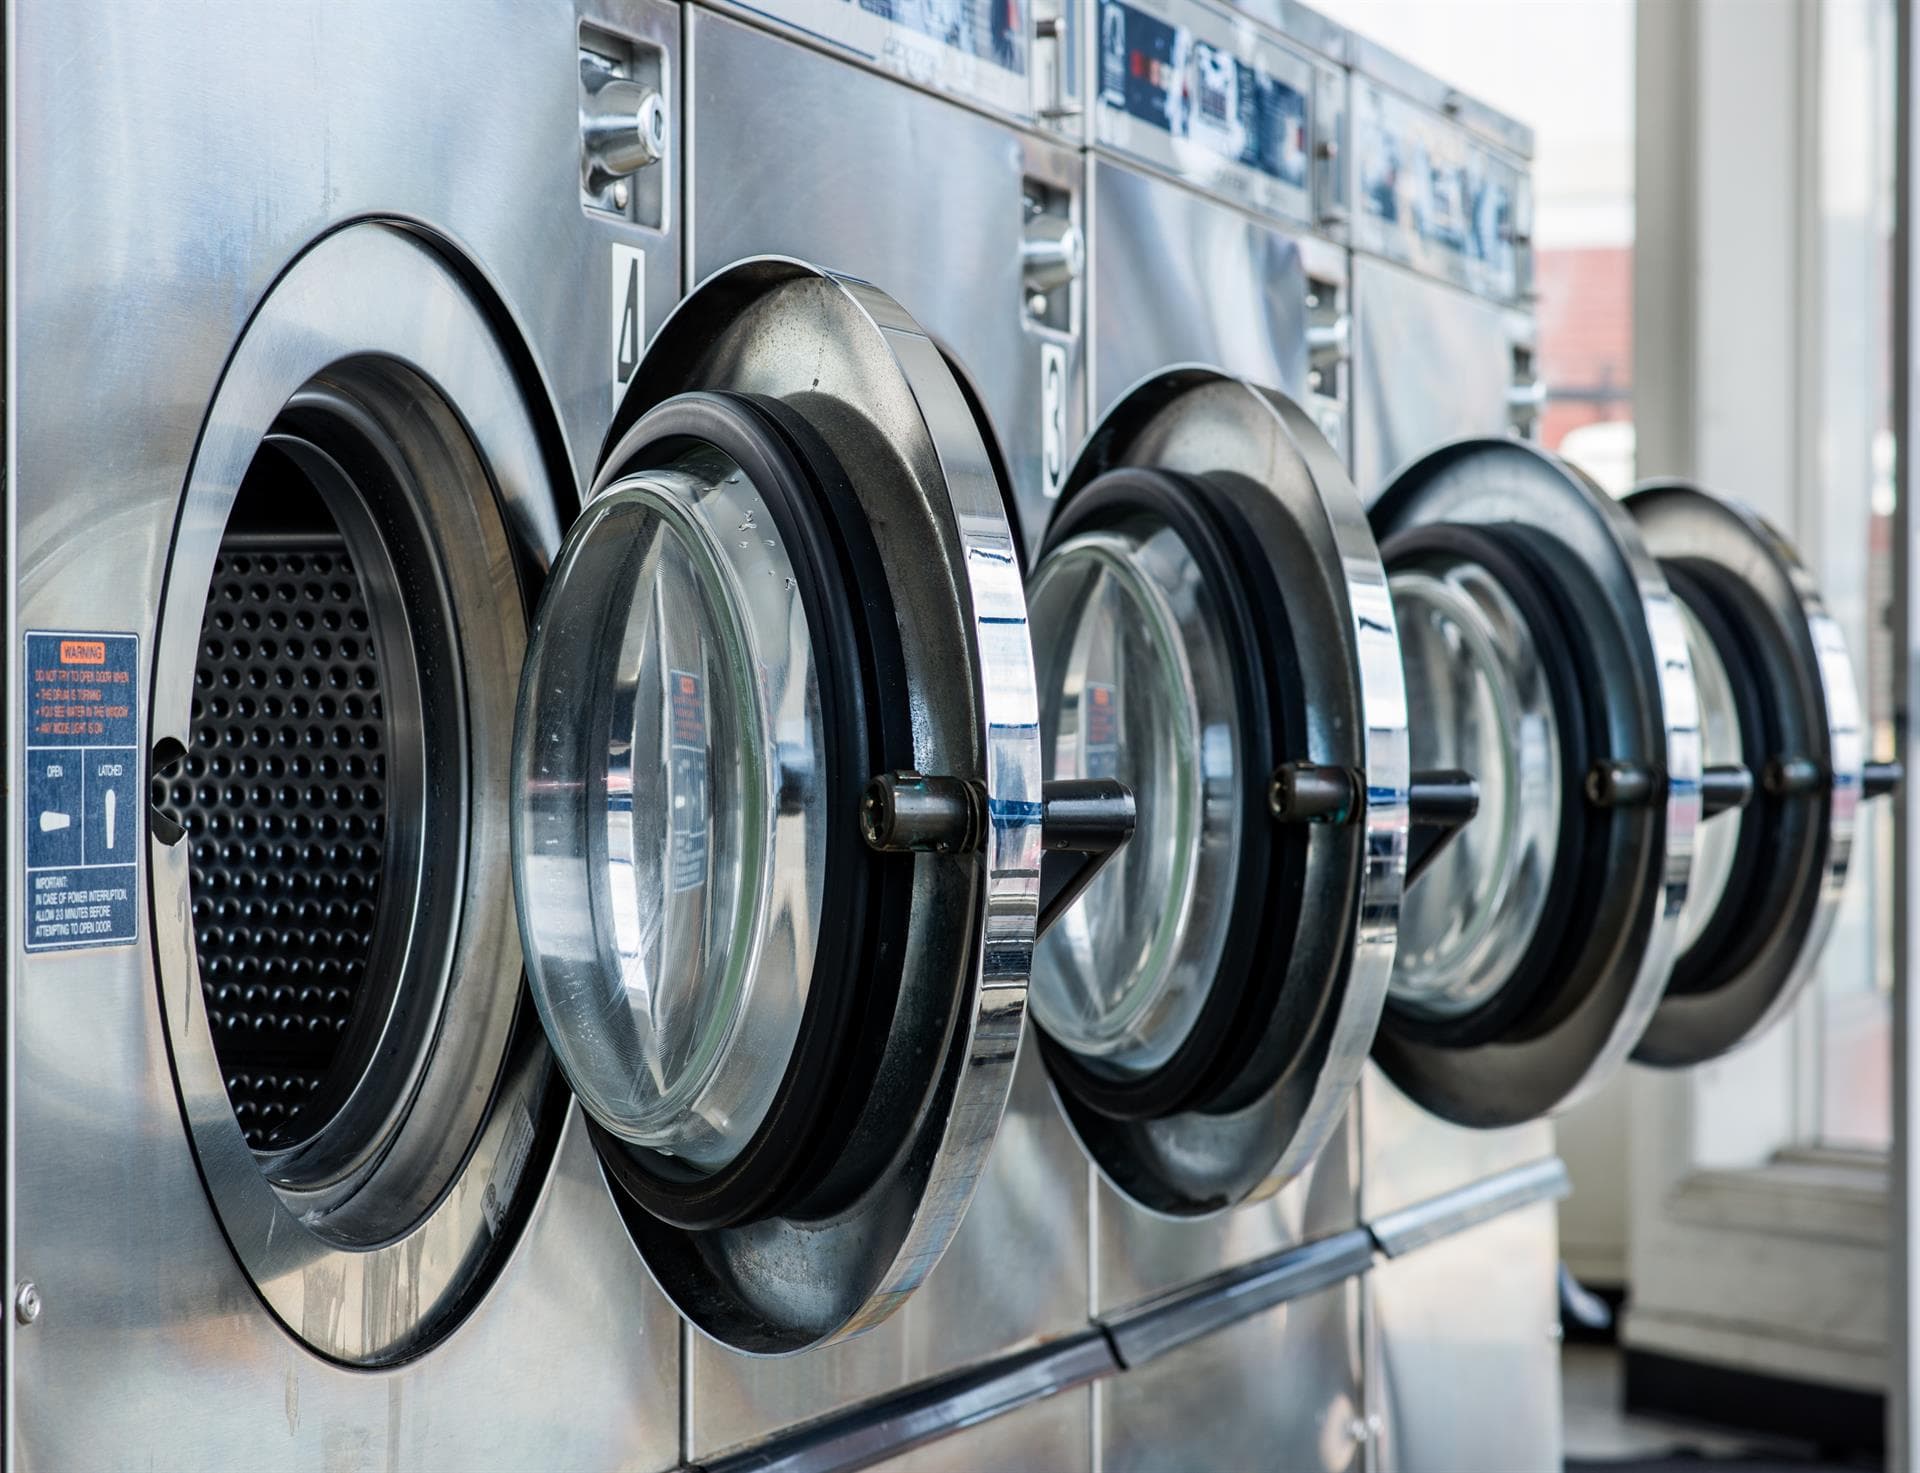 La revolución de las lavanderías son las secadoras industriales